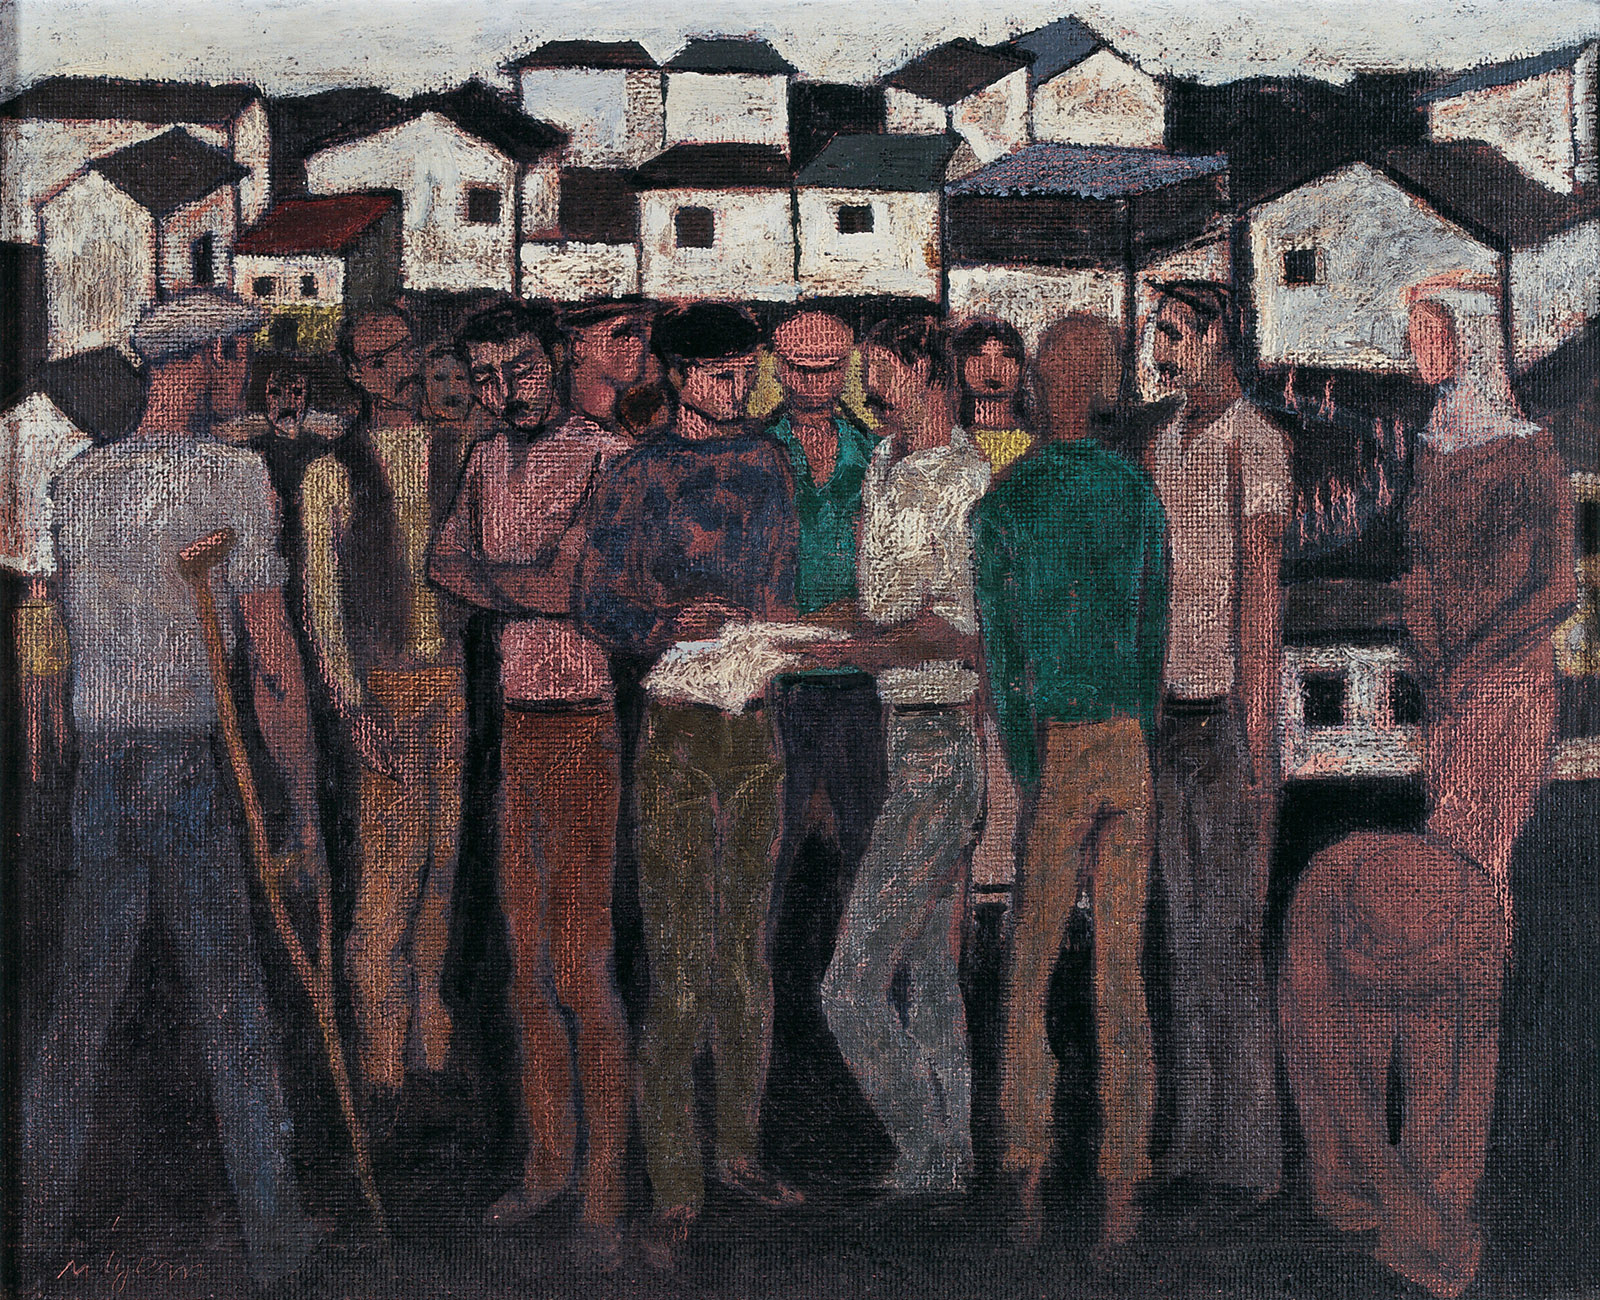 Gecekondularda Emekçiler / Labourers in the Shantytown - s1137-024